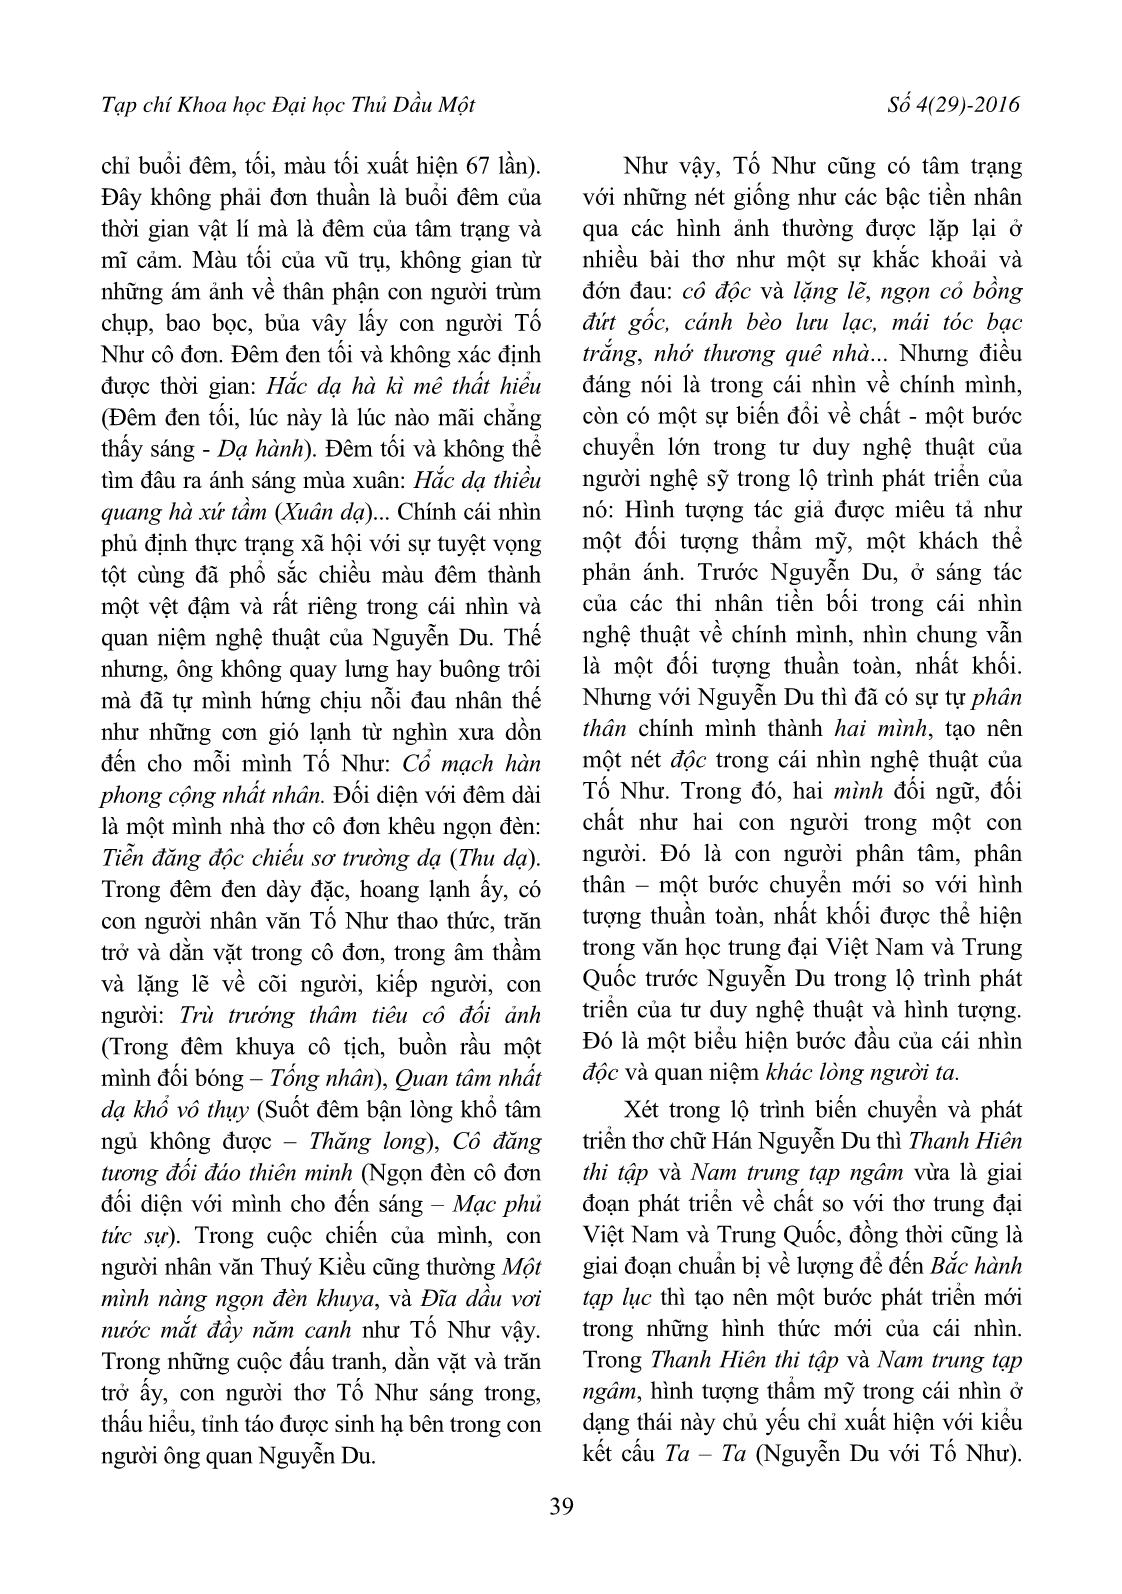 Cái nhìn nghệ thuật độc đáo và kiểu kết cấu “Người - Ta - Người ta” trong thơ chữ Hán Nguyễn Du trang 3